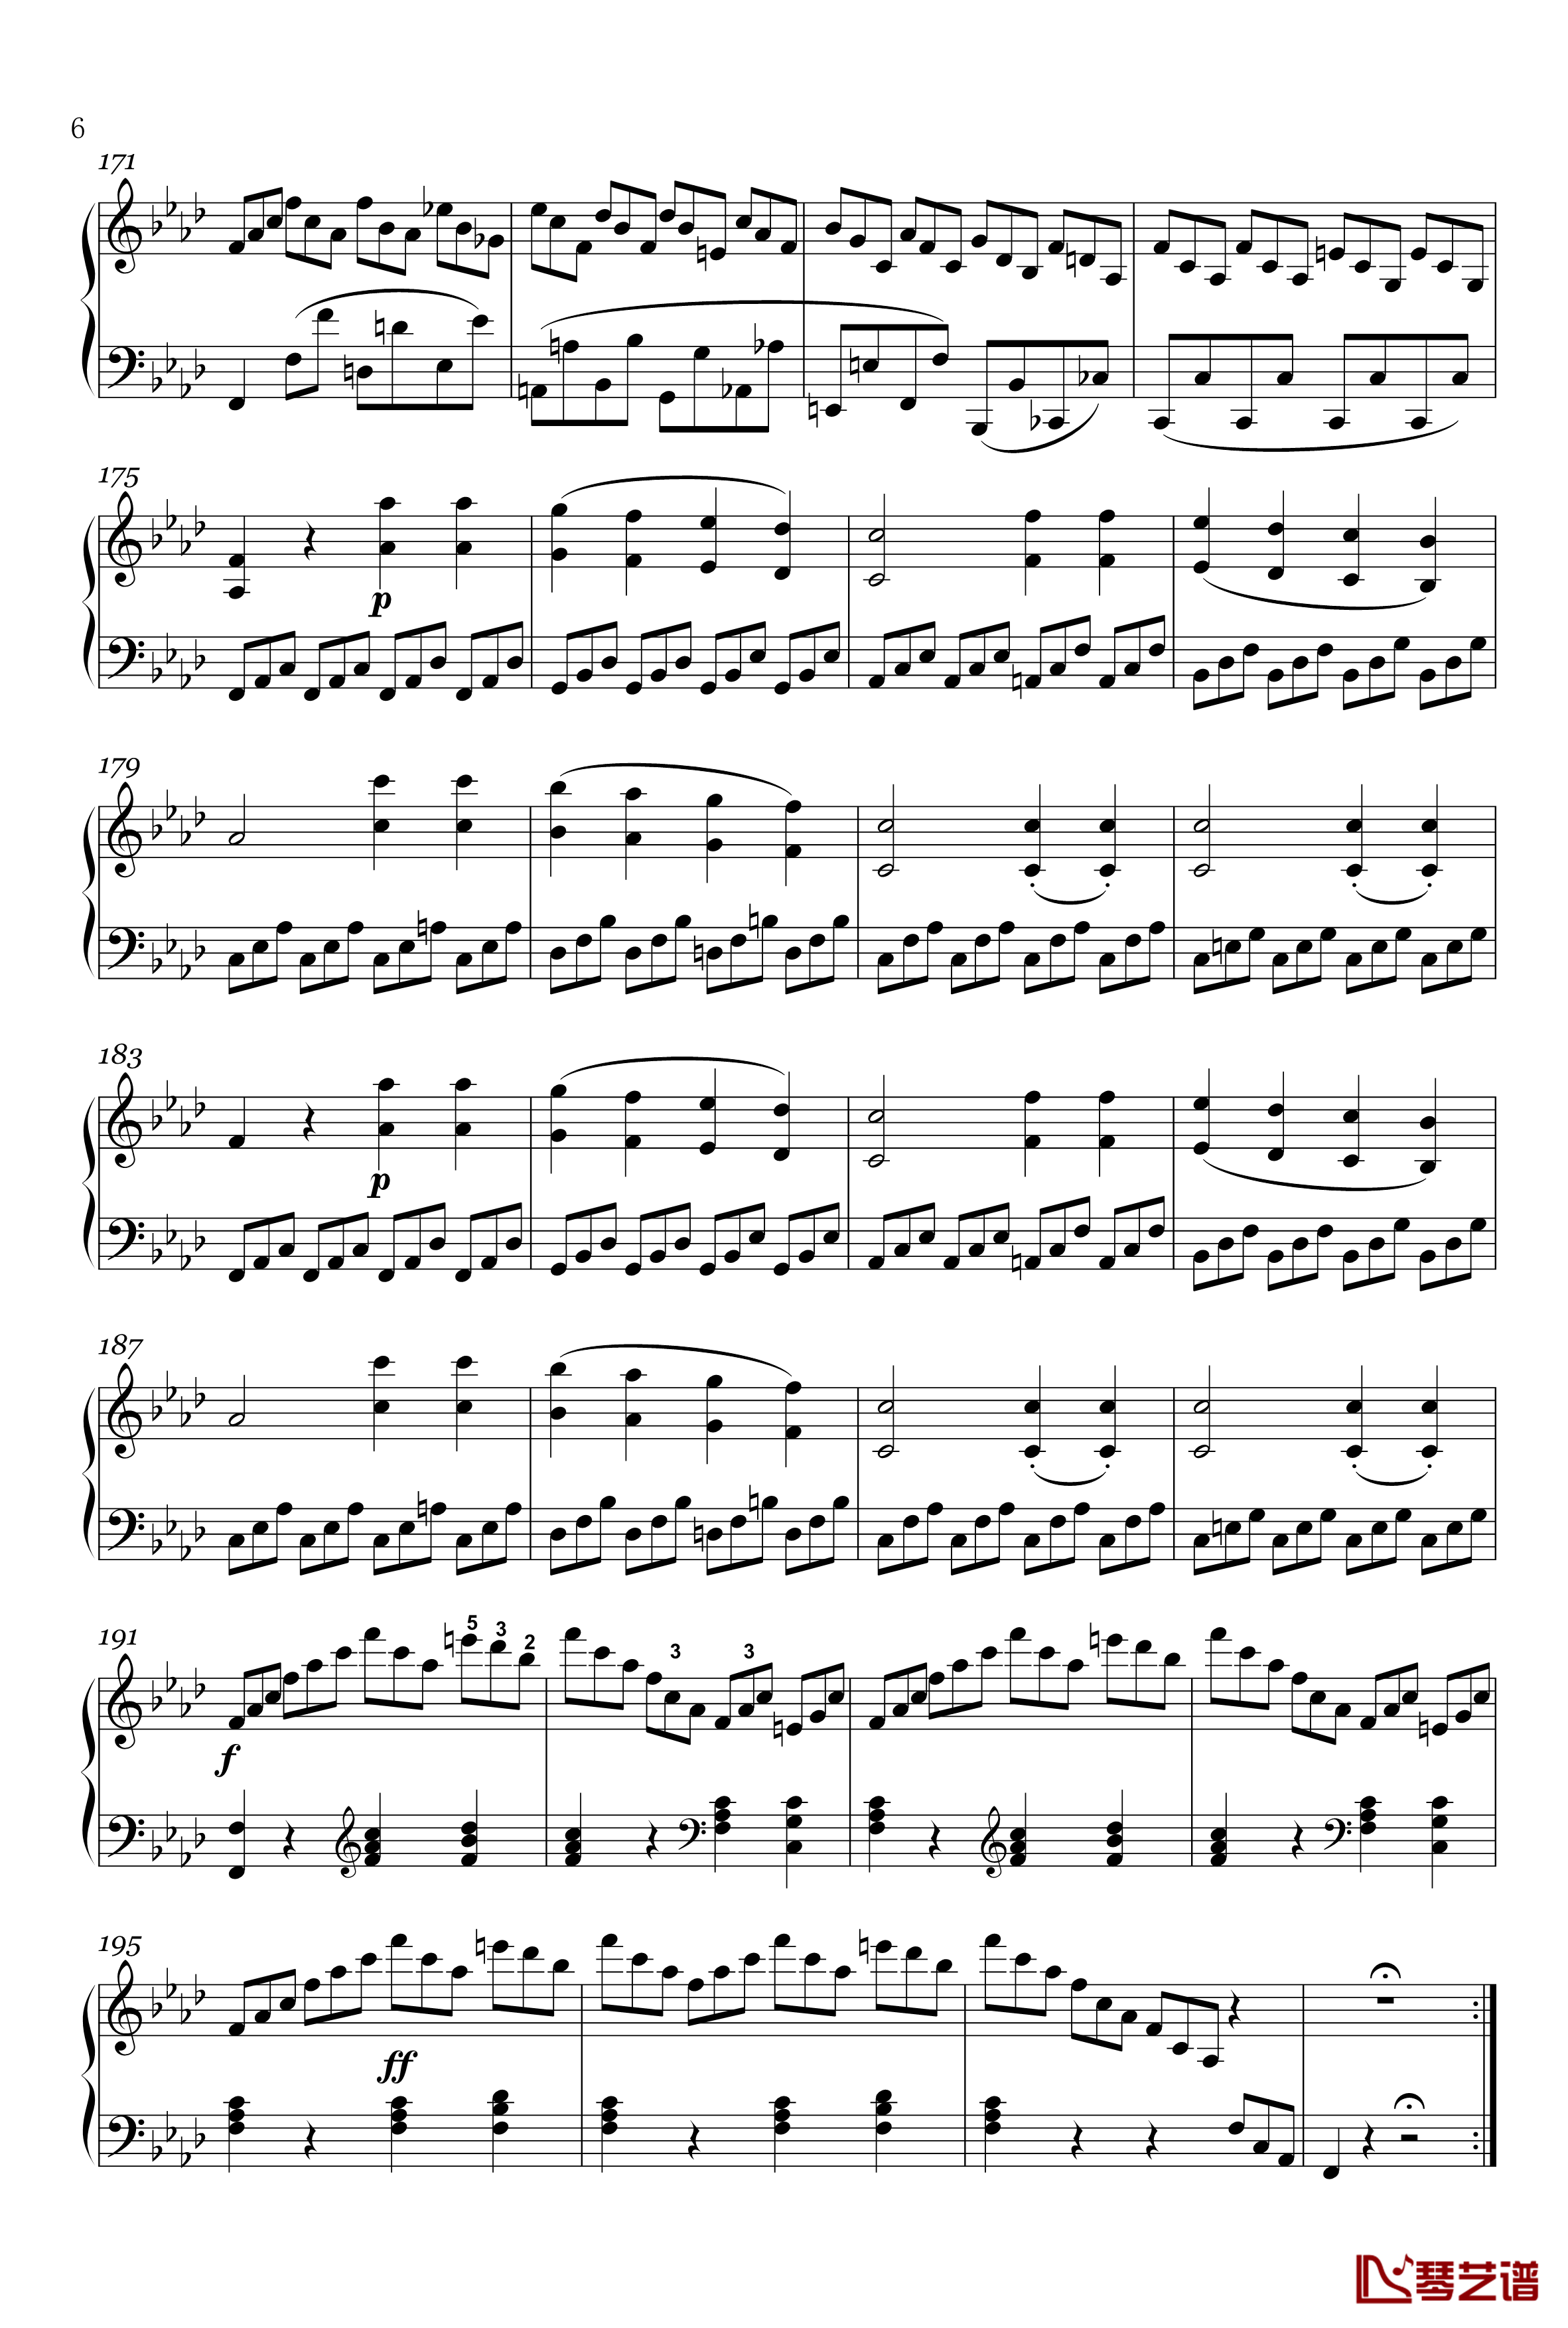 奏鸣曲钢琴谱-op-2-1-第四乐章-贝多芬-beethoven